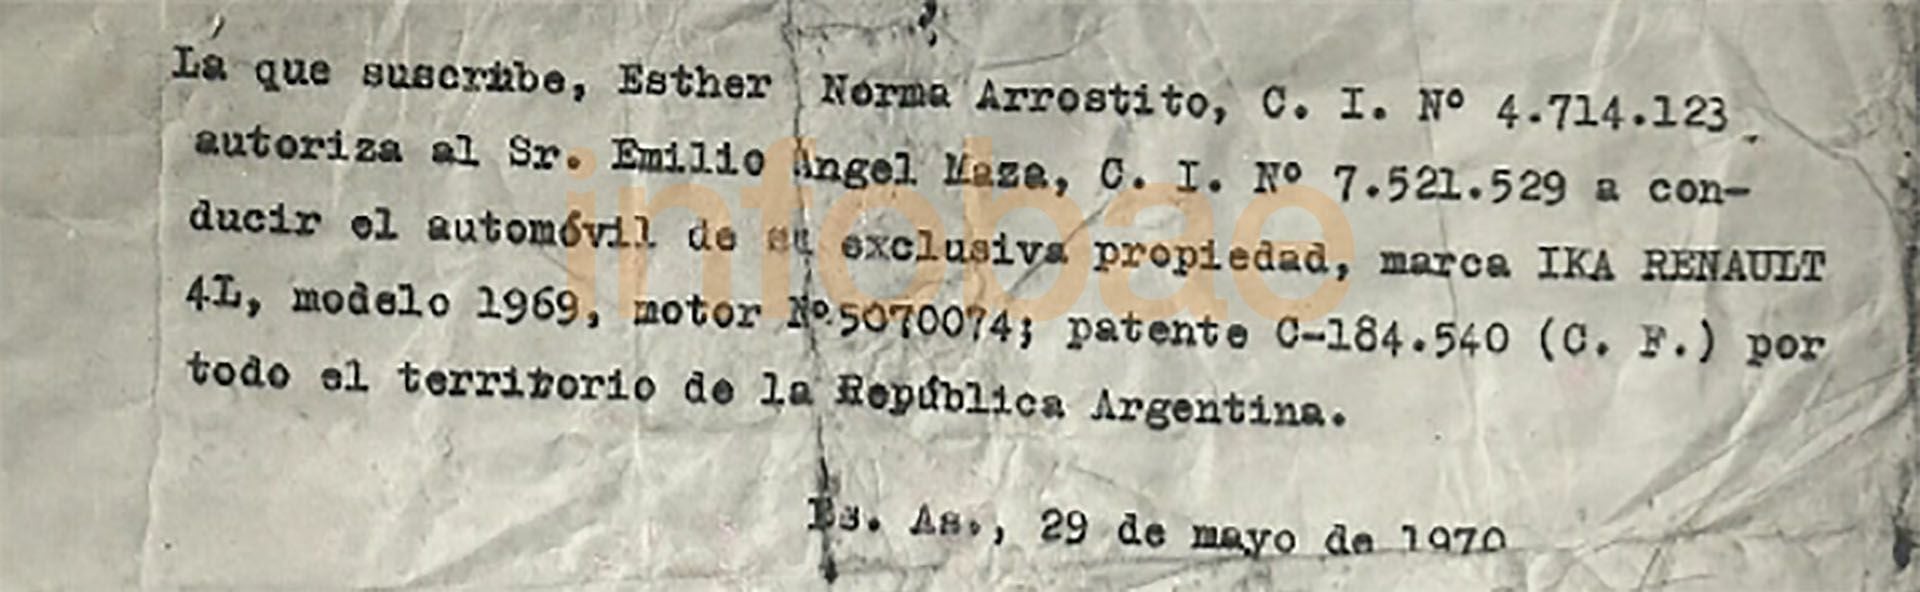 “Entre esos papeles hallose una autorización de manejo de un automotor marca Renault, modelo 1969, propiedad de Esther Norma Arrostito a favor de Emilio Ángel Maza”, dice el informe